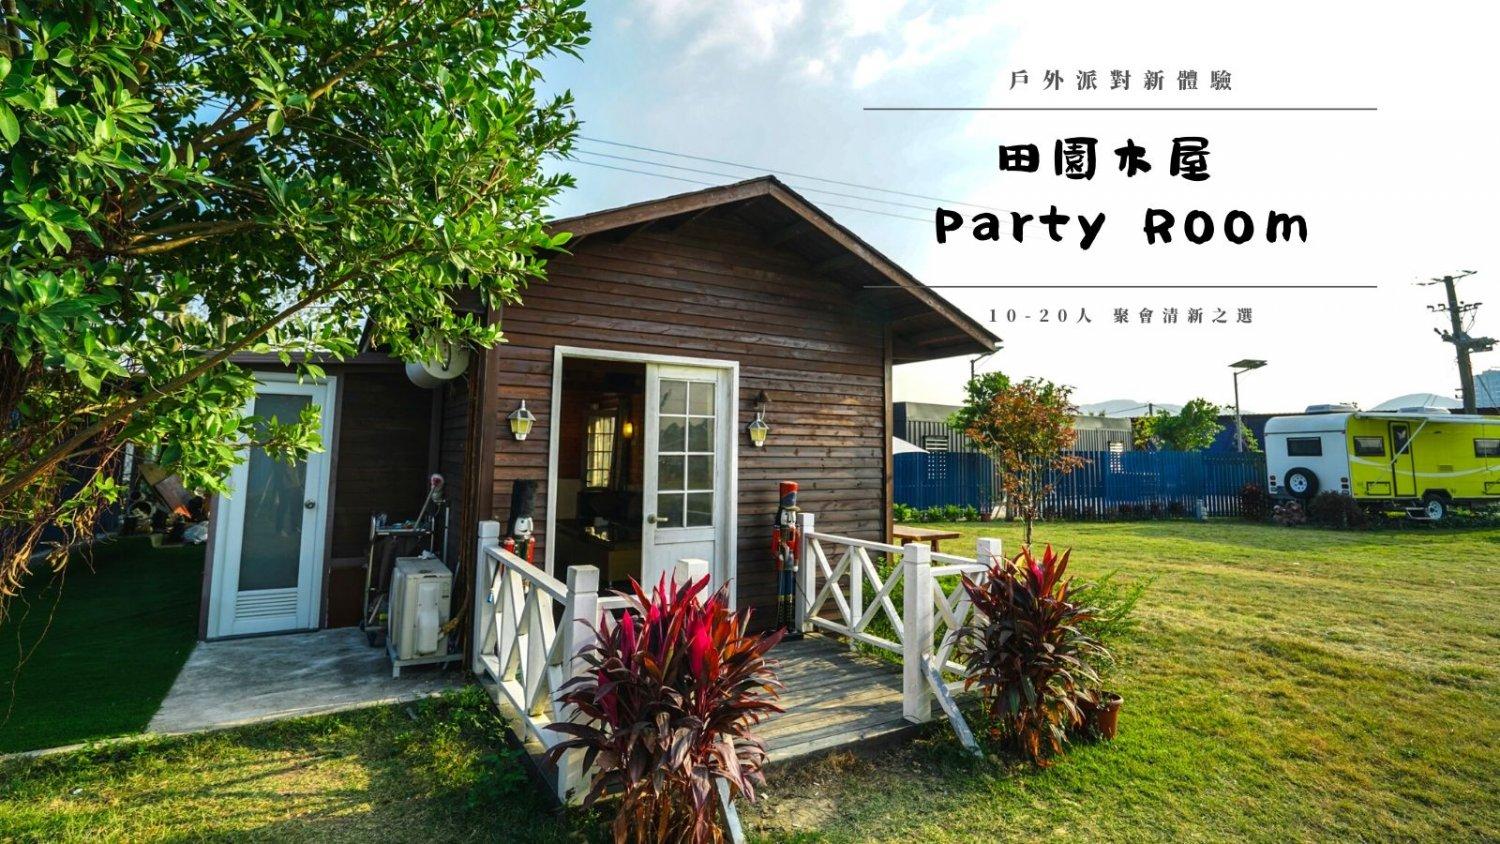 Park Nature - 世外公園 特色木屋Party Room 晚間5小時出租  (戶外大草地/ 燒烤/ 麻雀/ 卡拉OK) 1